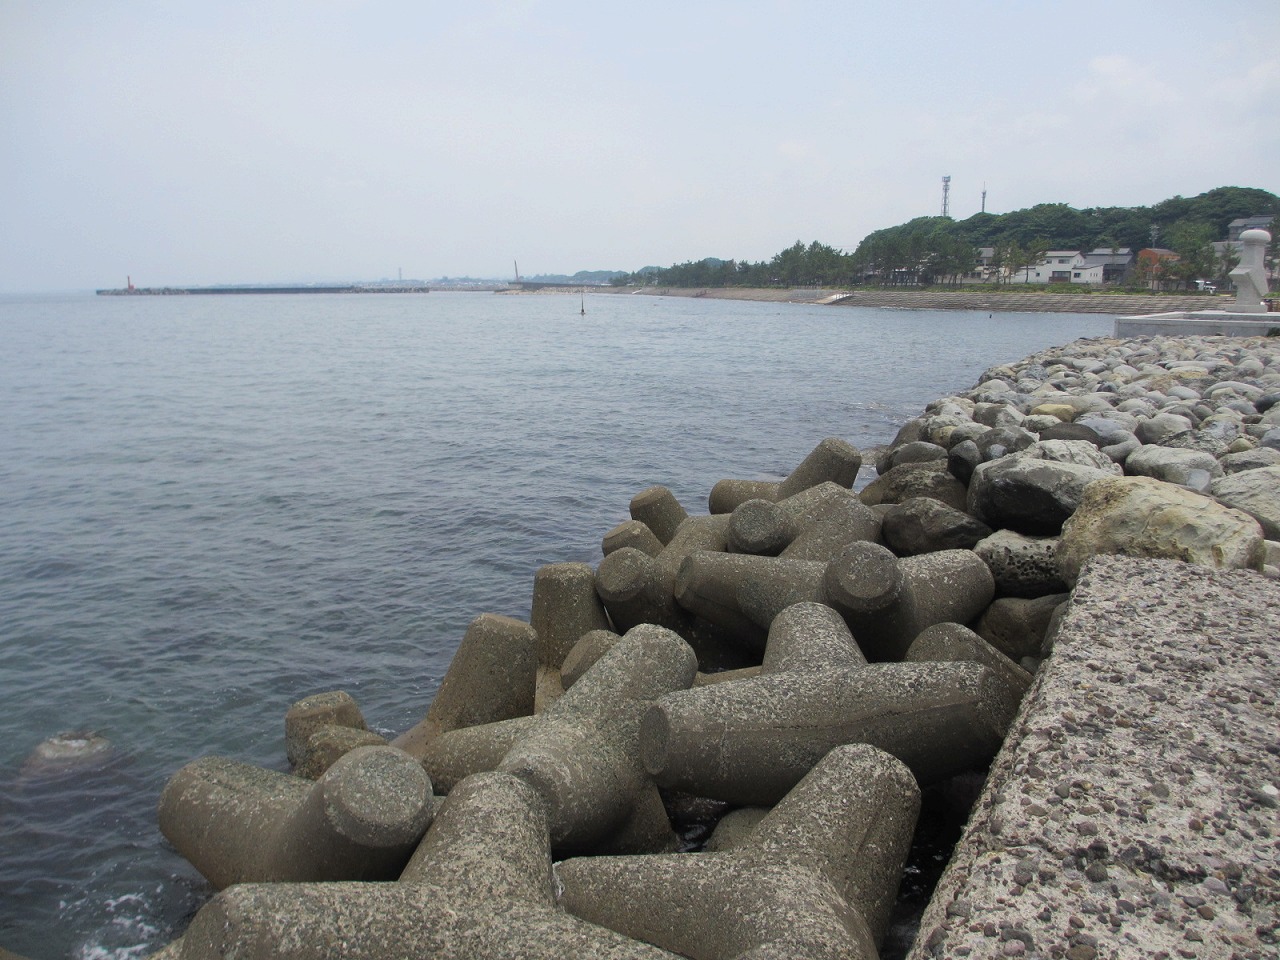 鳥取県,海釣り,ポイント,菊港